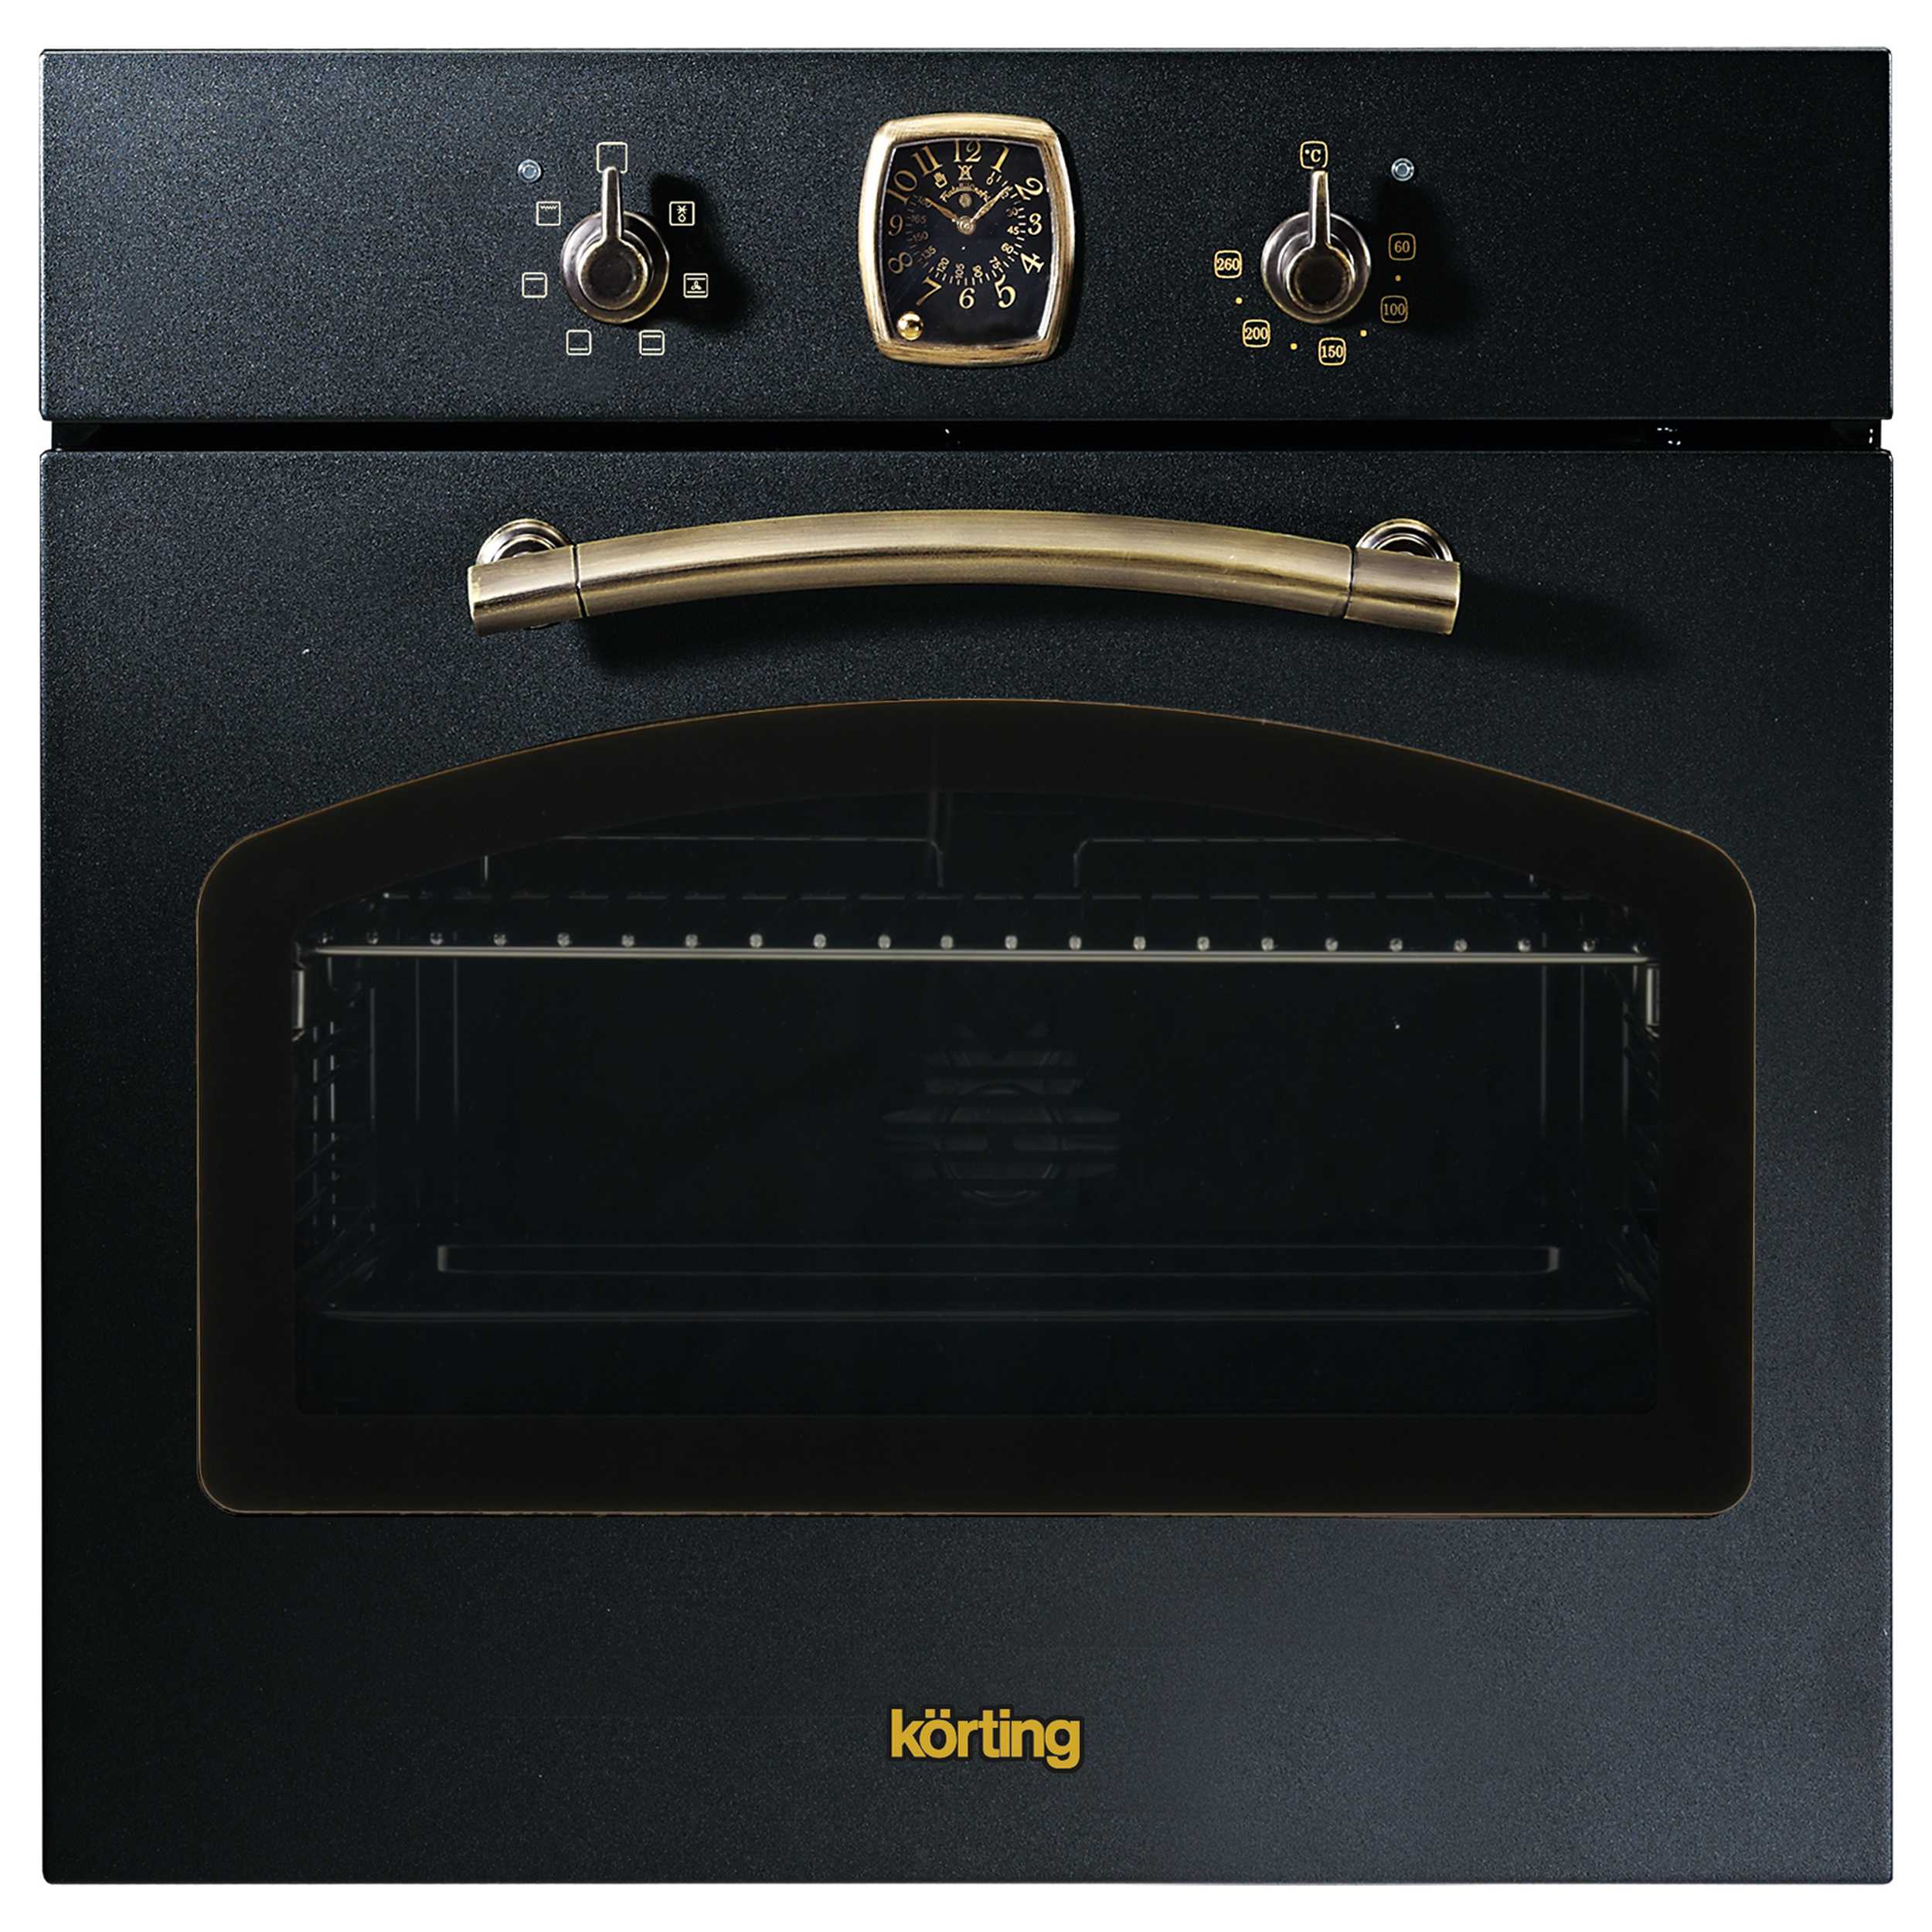 Встраиваемый электрический духовой шкаф Korting OKB 460 RN черный, золотистый смарт часы leef cygnus золотистый